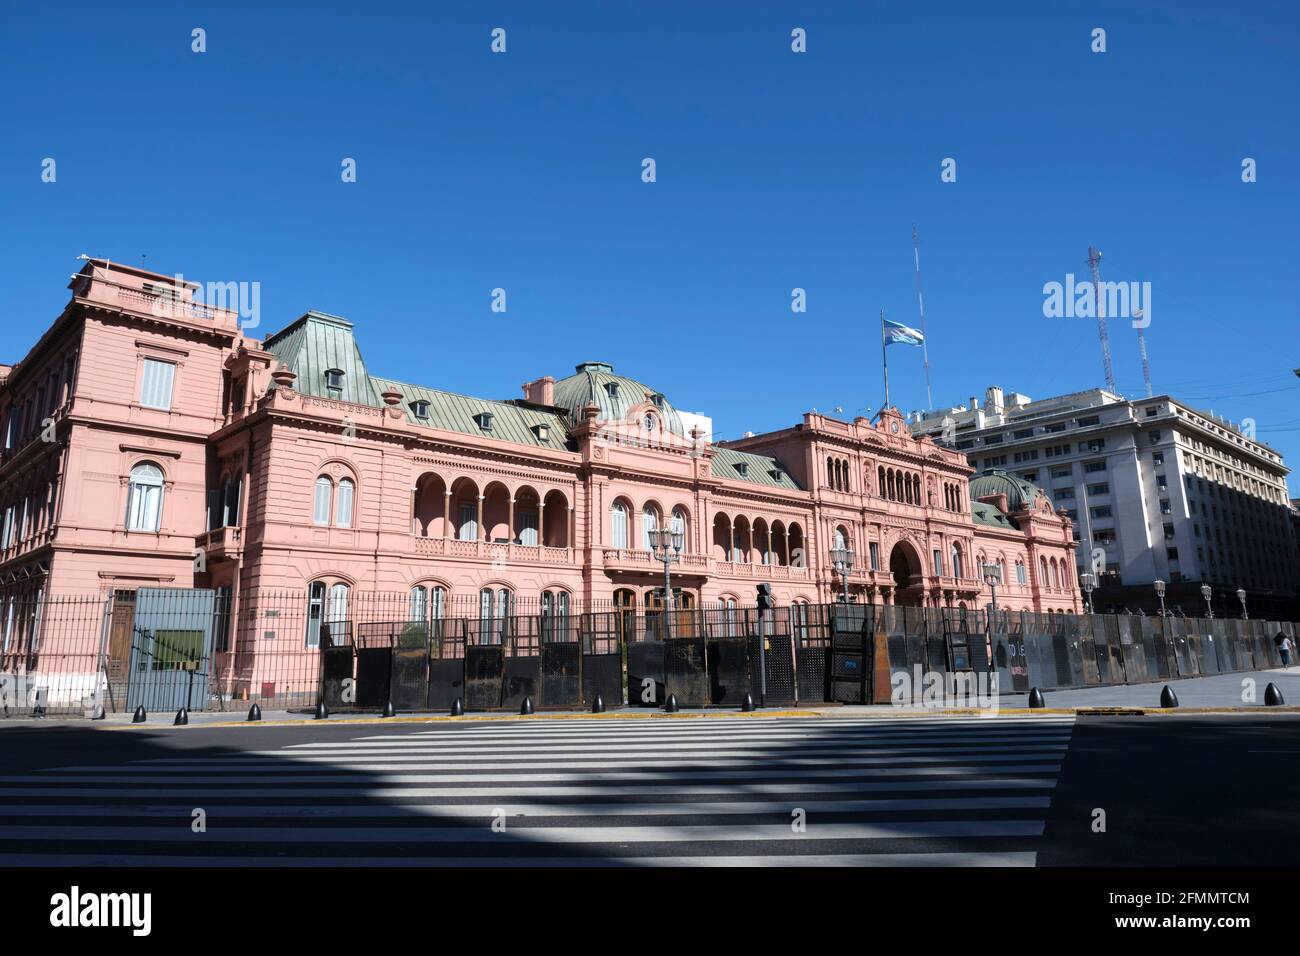 Buenos Aires, Argentinien; 24. Januar 2021: Pink House, Casa Rosada, geschäftshaus und Büro des argentinischen Präsidenten, an der Plaza de Mayo, Hauptplatz Stockfoto